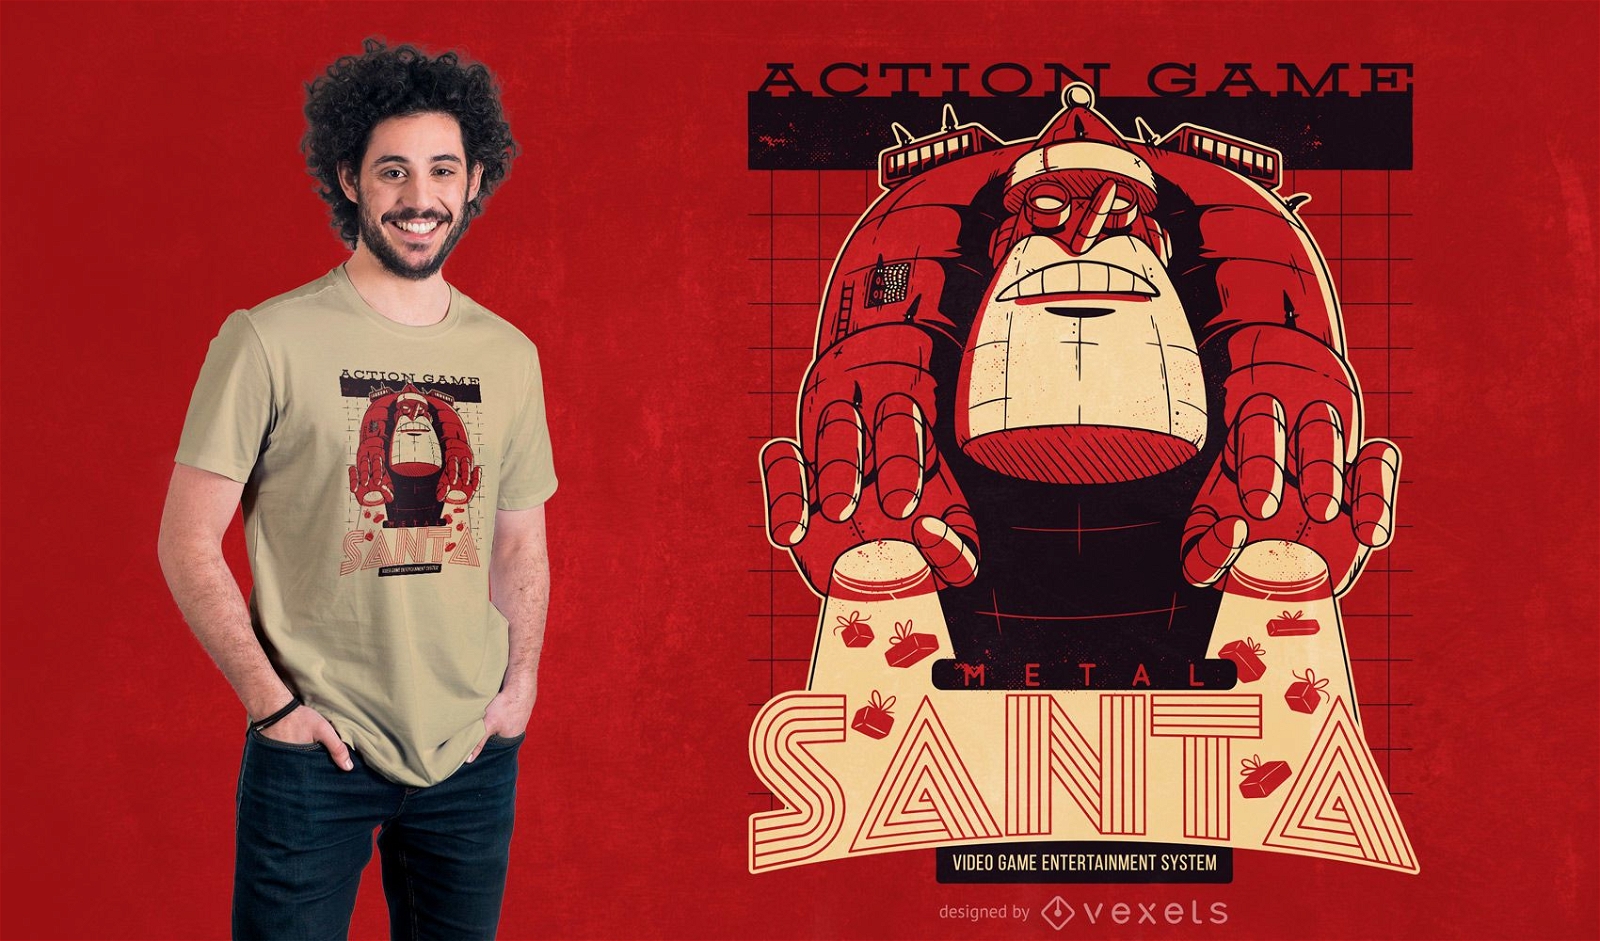 Metal santa t-shirt design